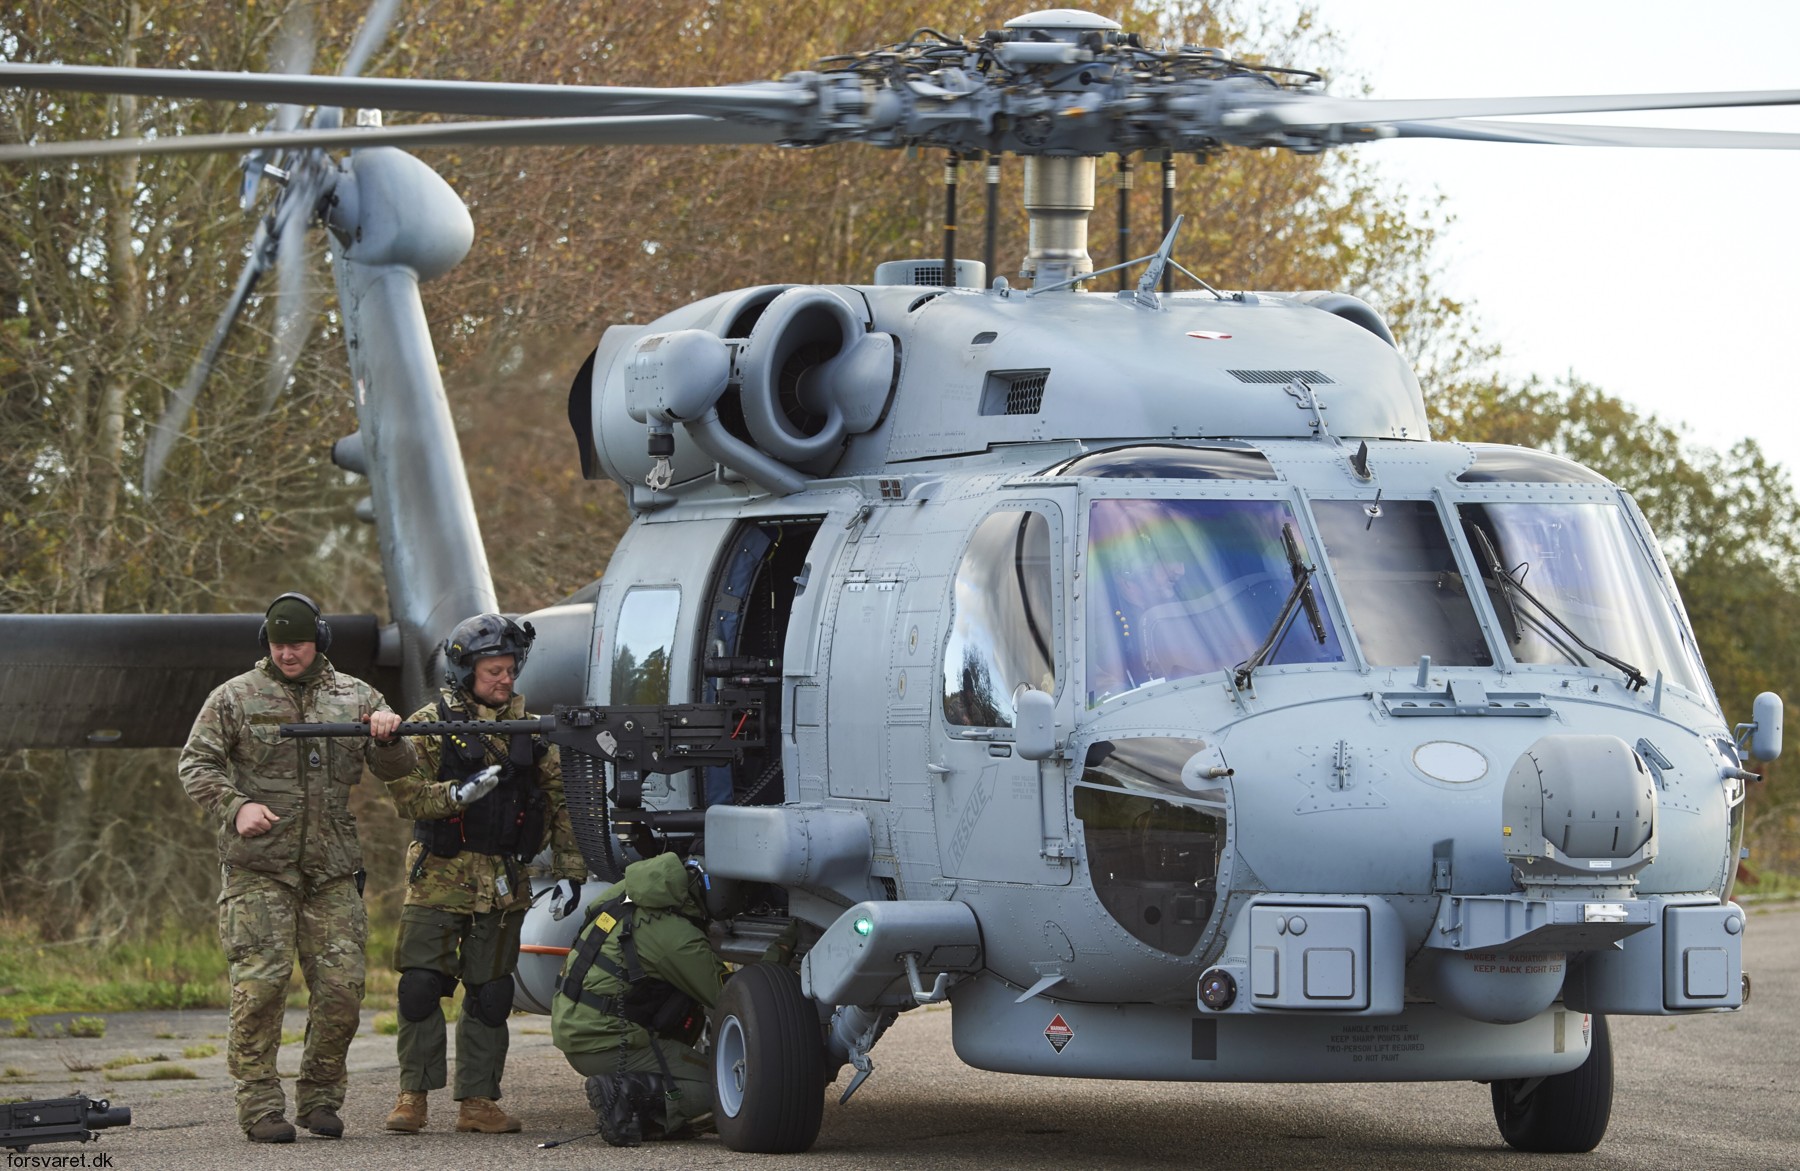 mh-60r seahawk royal danish navy air force flyvevåbnet kongelige danske marine sikorsky helicopter 723 eskadrille squadron karup 28